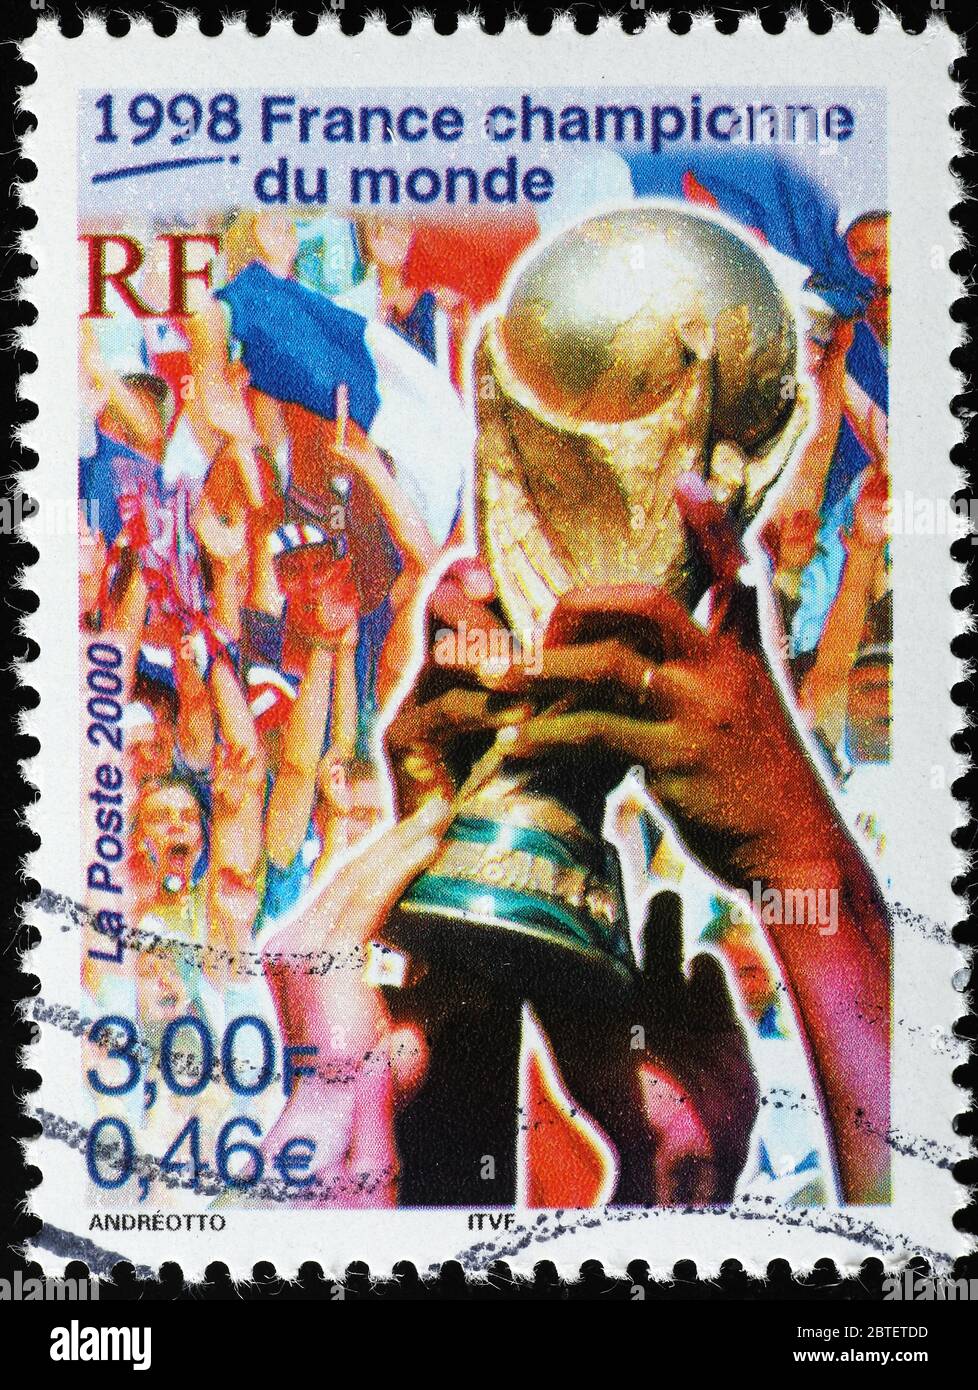 Timbre célébrant le championnat du monde de football de France en 1988 Banque D'Images